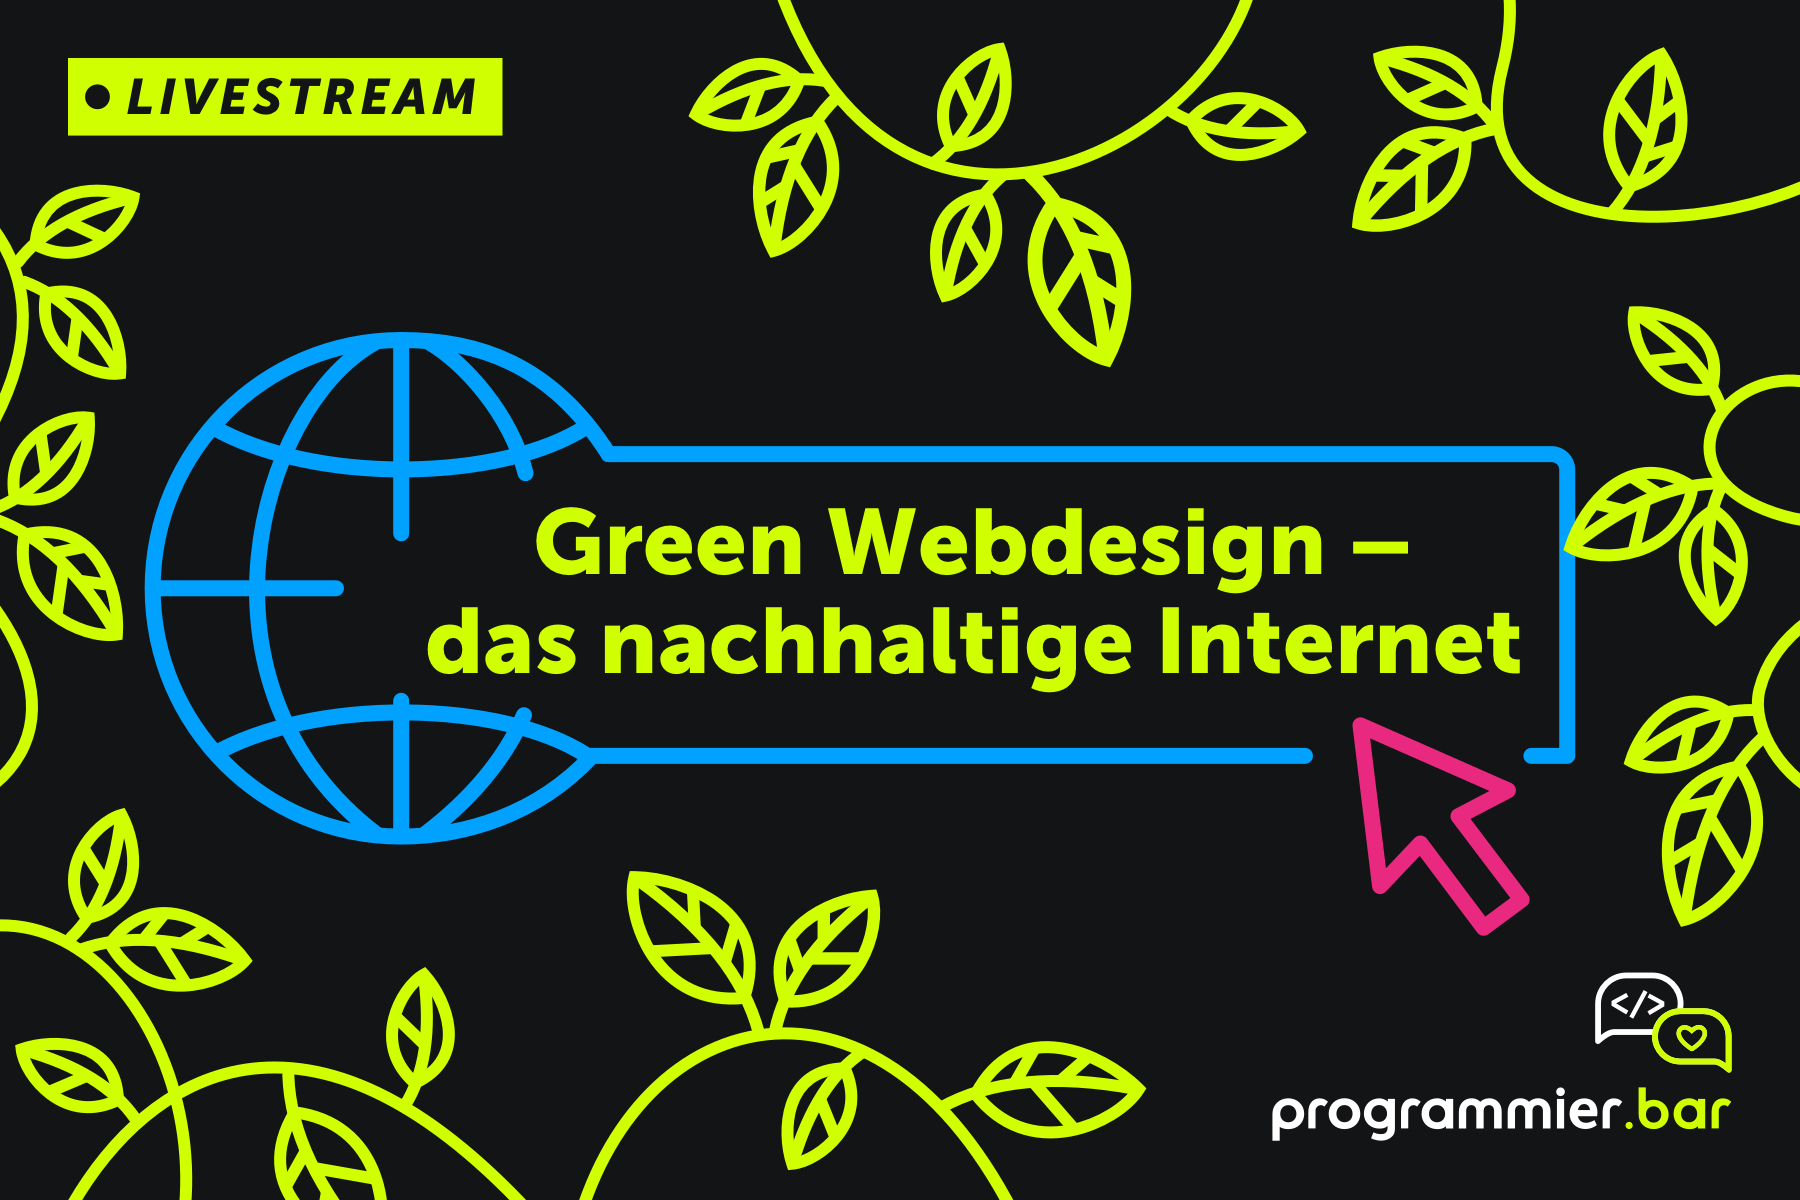 Green Webdesign